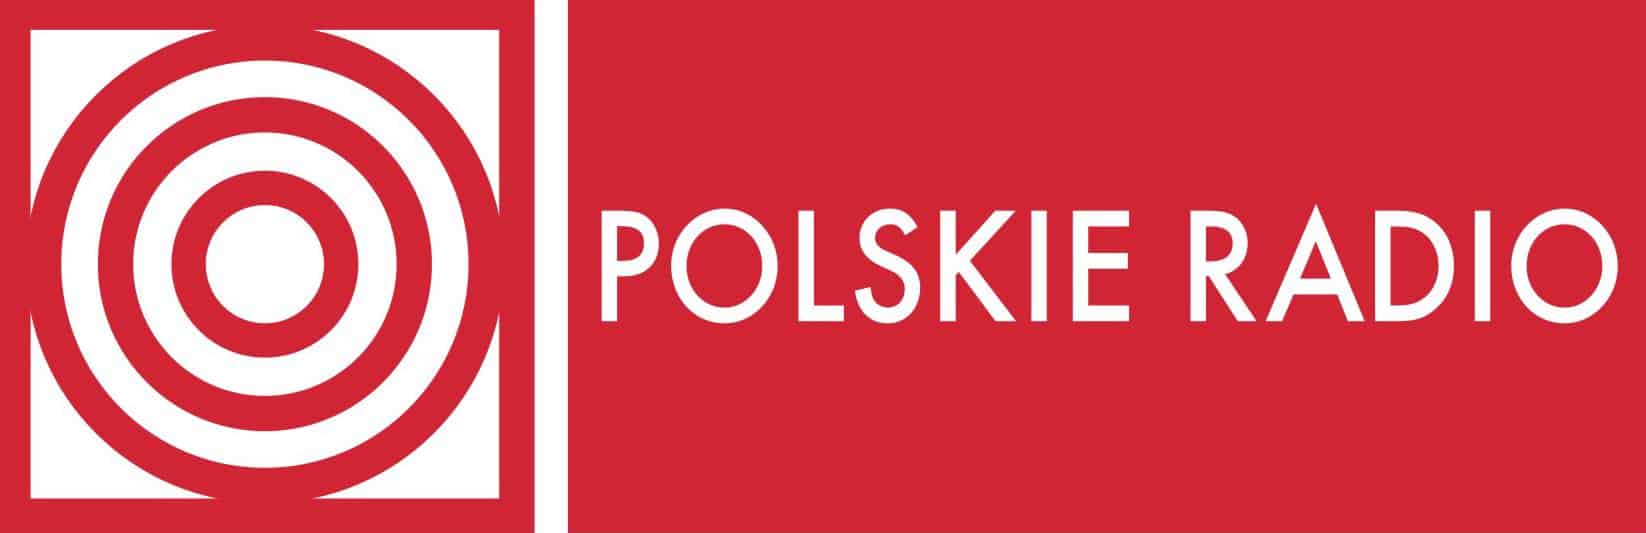 Polskie Radio zaprasza na koncert To, co najpiękniejsze... - Zima